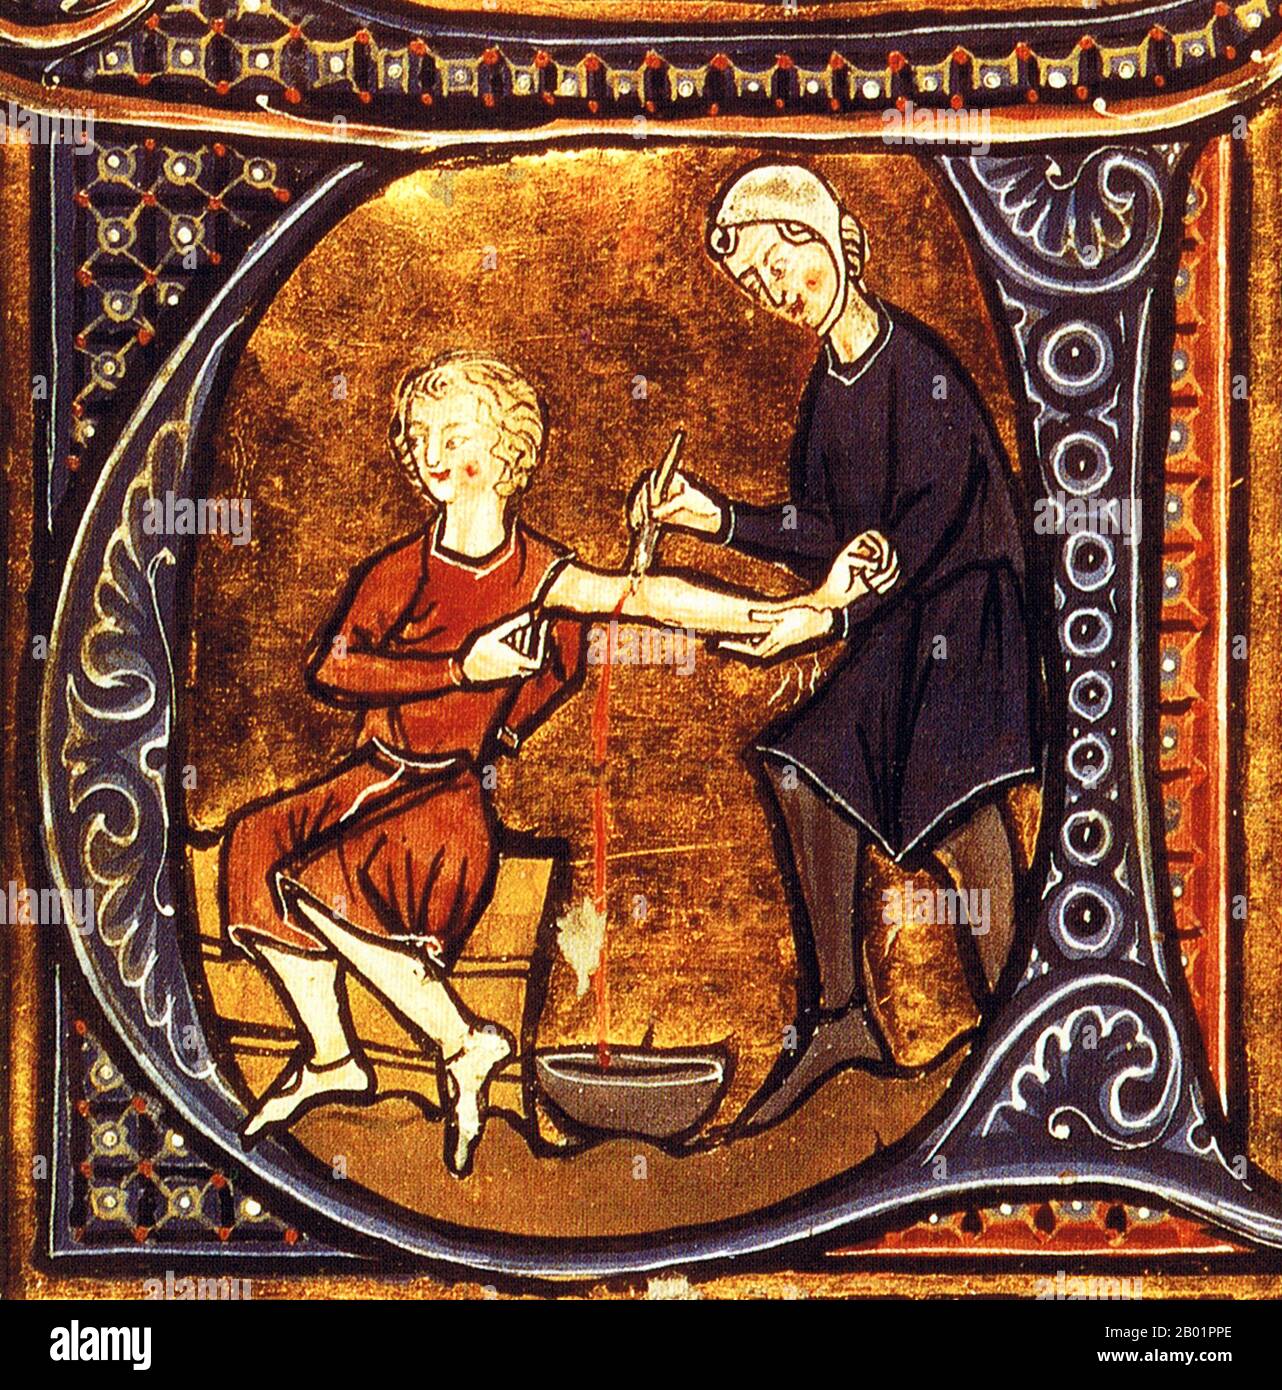 Italien: Arzt lässt Blut von einem Patienten. Aus dem Buch Li Livres dou Santé von Aldobrandino von Siena (-1296/1299), Ende des 13. Jahrhunderts. Aderlass (oder Blutlass) ist die Entnahme von oft geringen Blutmengen von einem Patienten, um Krankheit und Krankheit zu heilen oder zu verhindern. Das Aderlass basierte auf einem alten System der Medizin, in dem Blut und andere Körperflüssigkeiten als „Humore“ angesehen wurden, deren richtige Balance die Gesundheit aufrechterhielt. Es war die häufigste medizinische Praxis von Ärzten von der Antike bis zum späten 19. Jahrhundert, eine Zeitspanne von fast 2.000 Jahren. Stockfoto